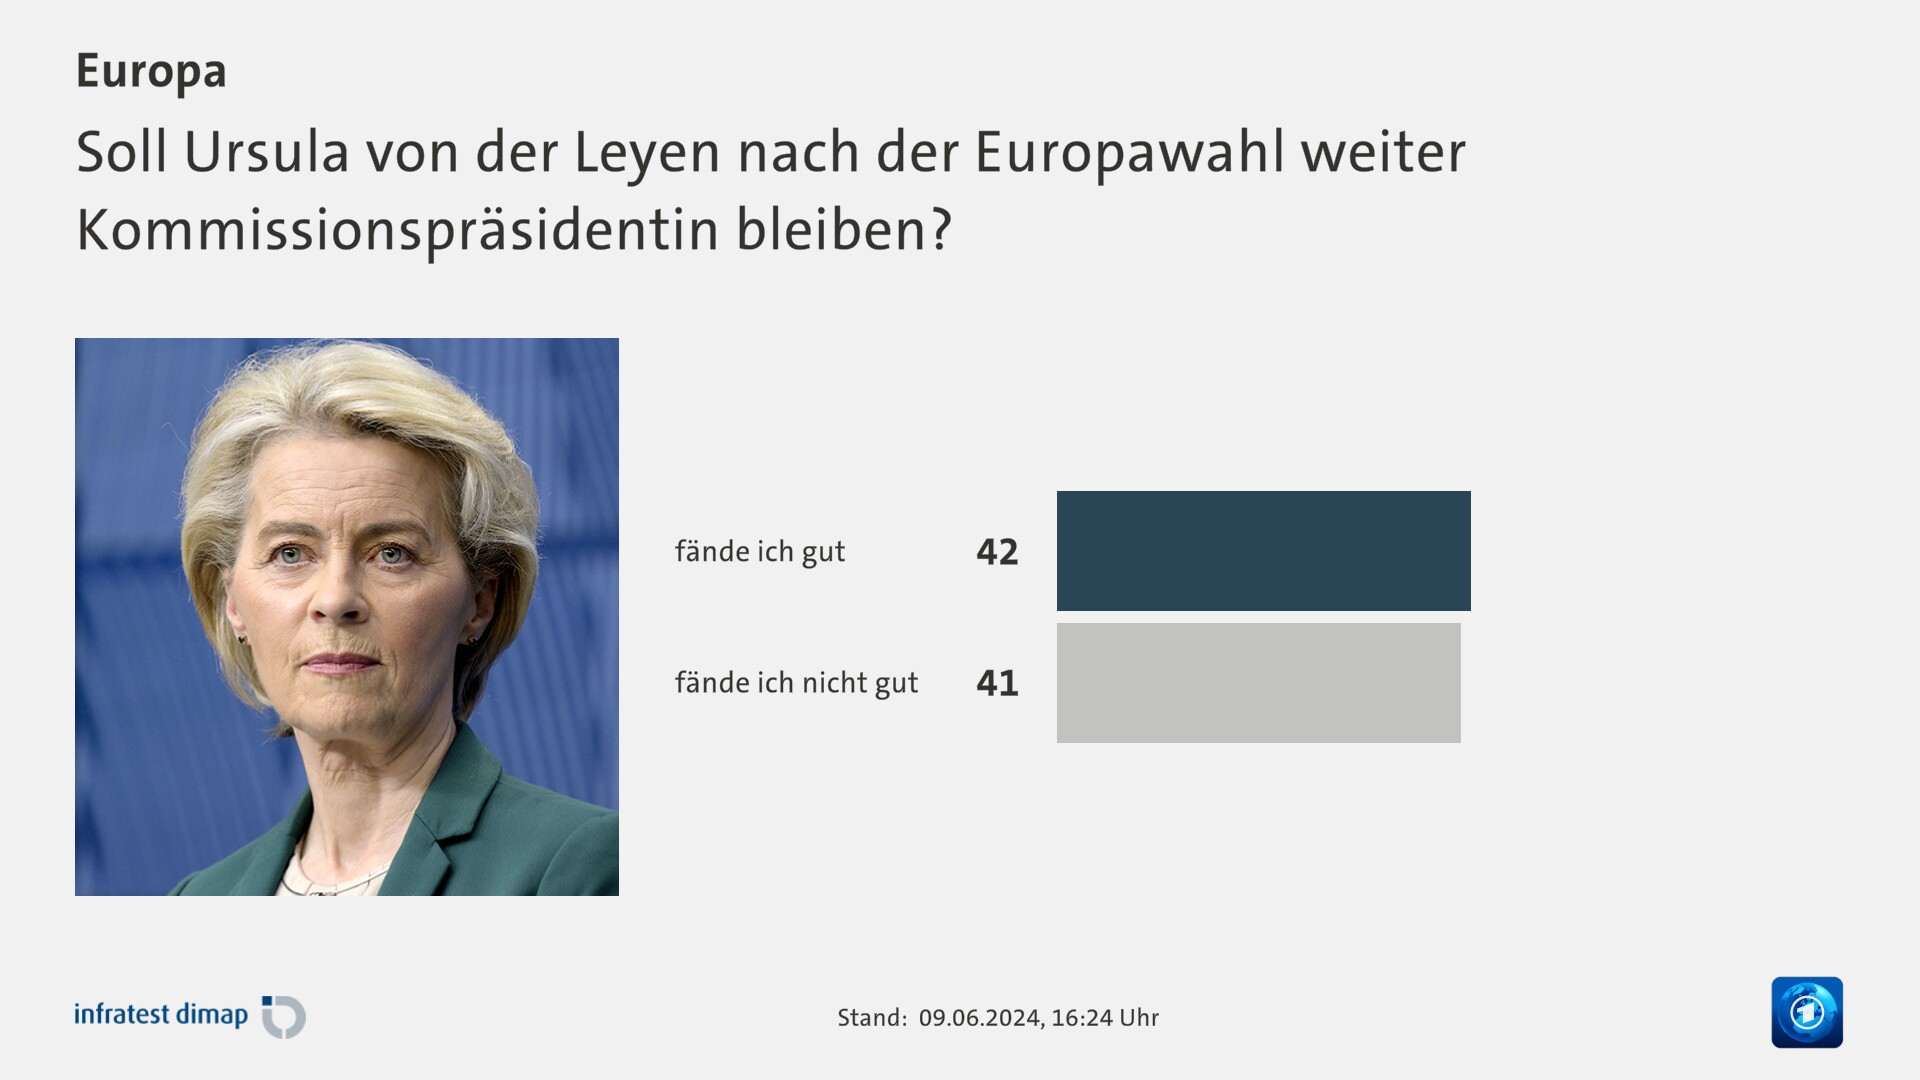 Soll Ursula von der Leyen nach der Europawahl weiter Kommissionspräsidentin bleiben?